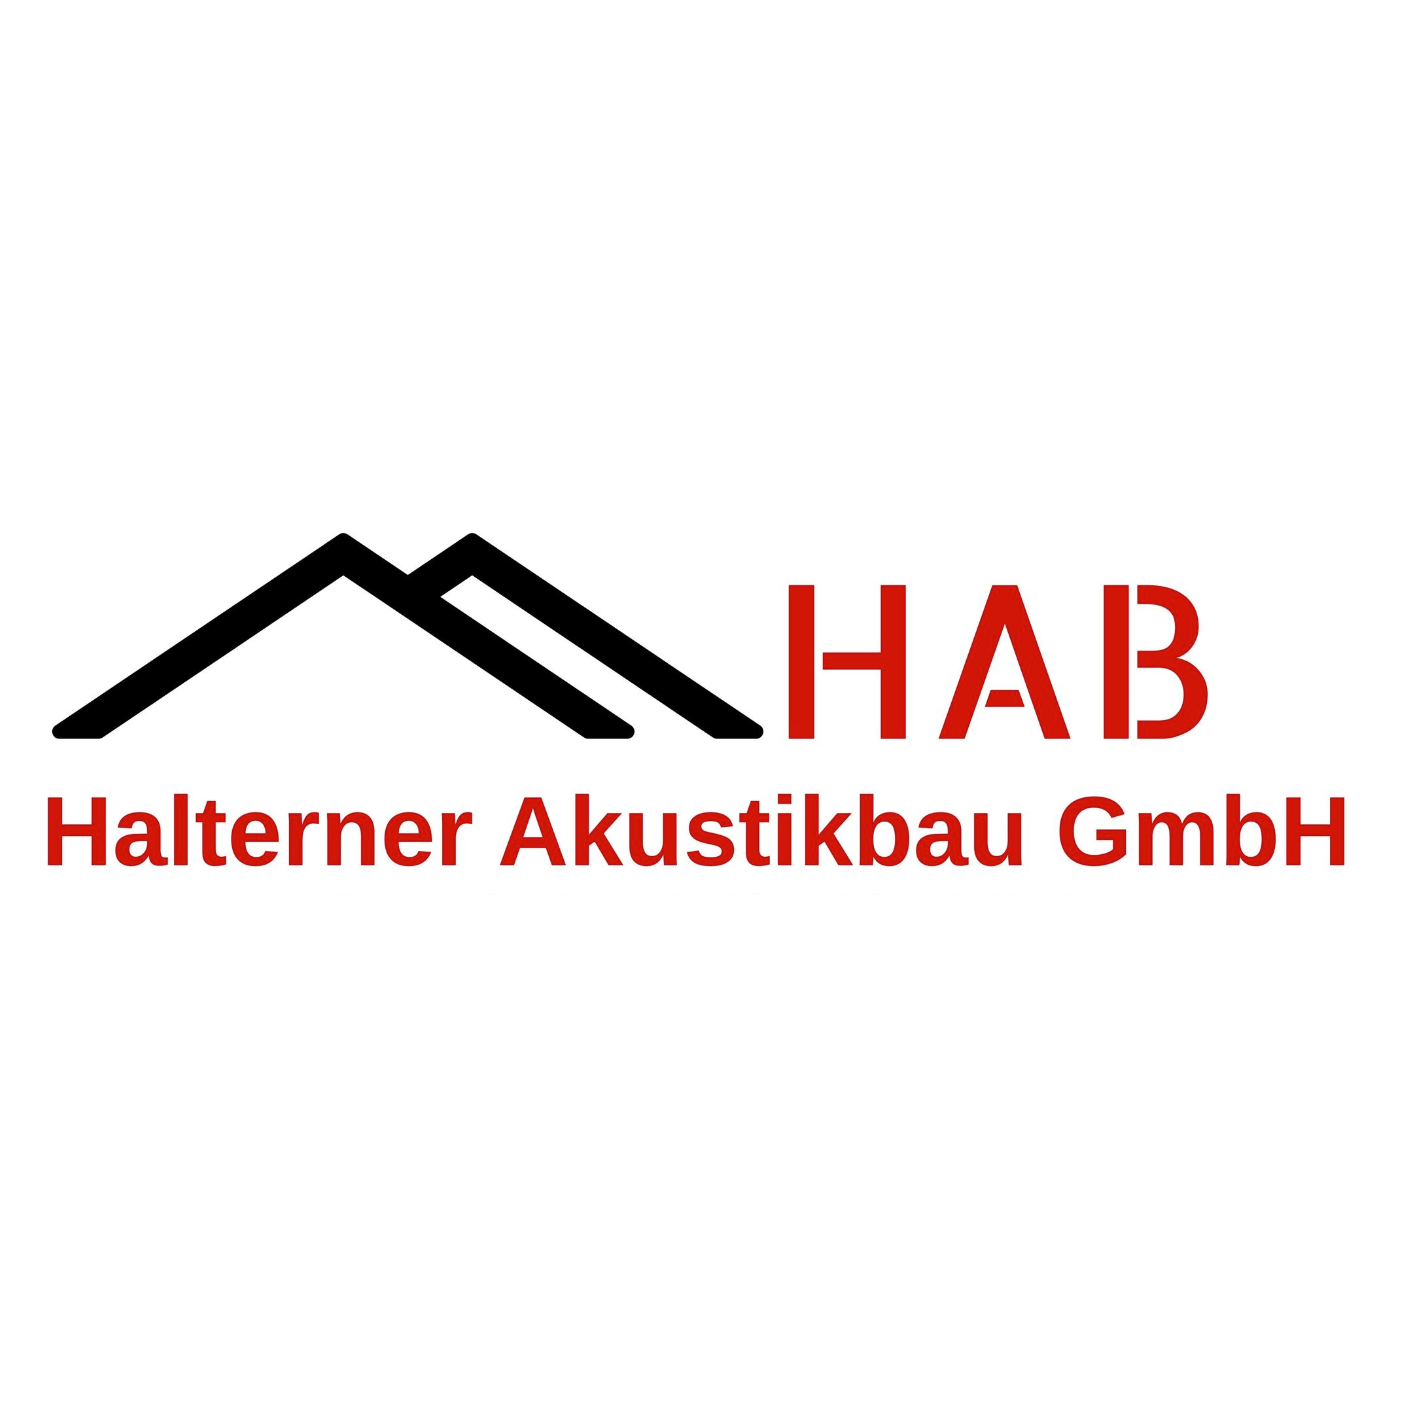 Halterner Akustikbau GmbH in Haltern am See - Logo